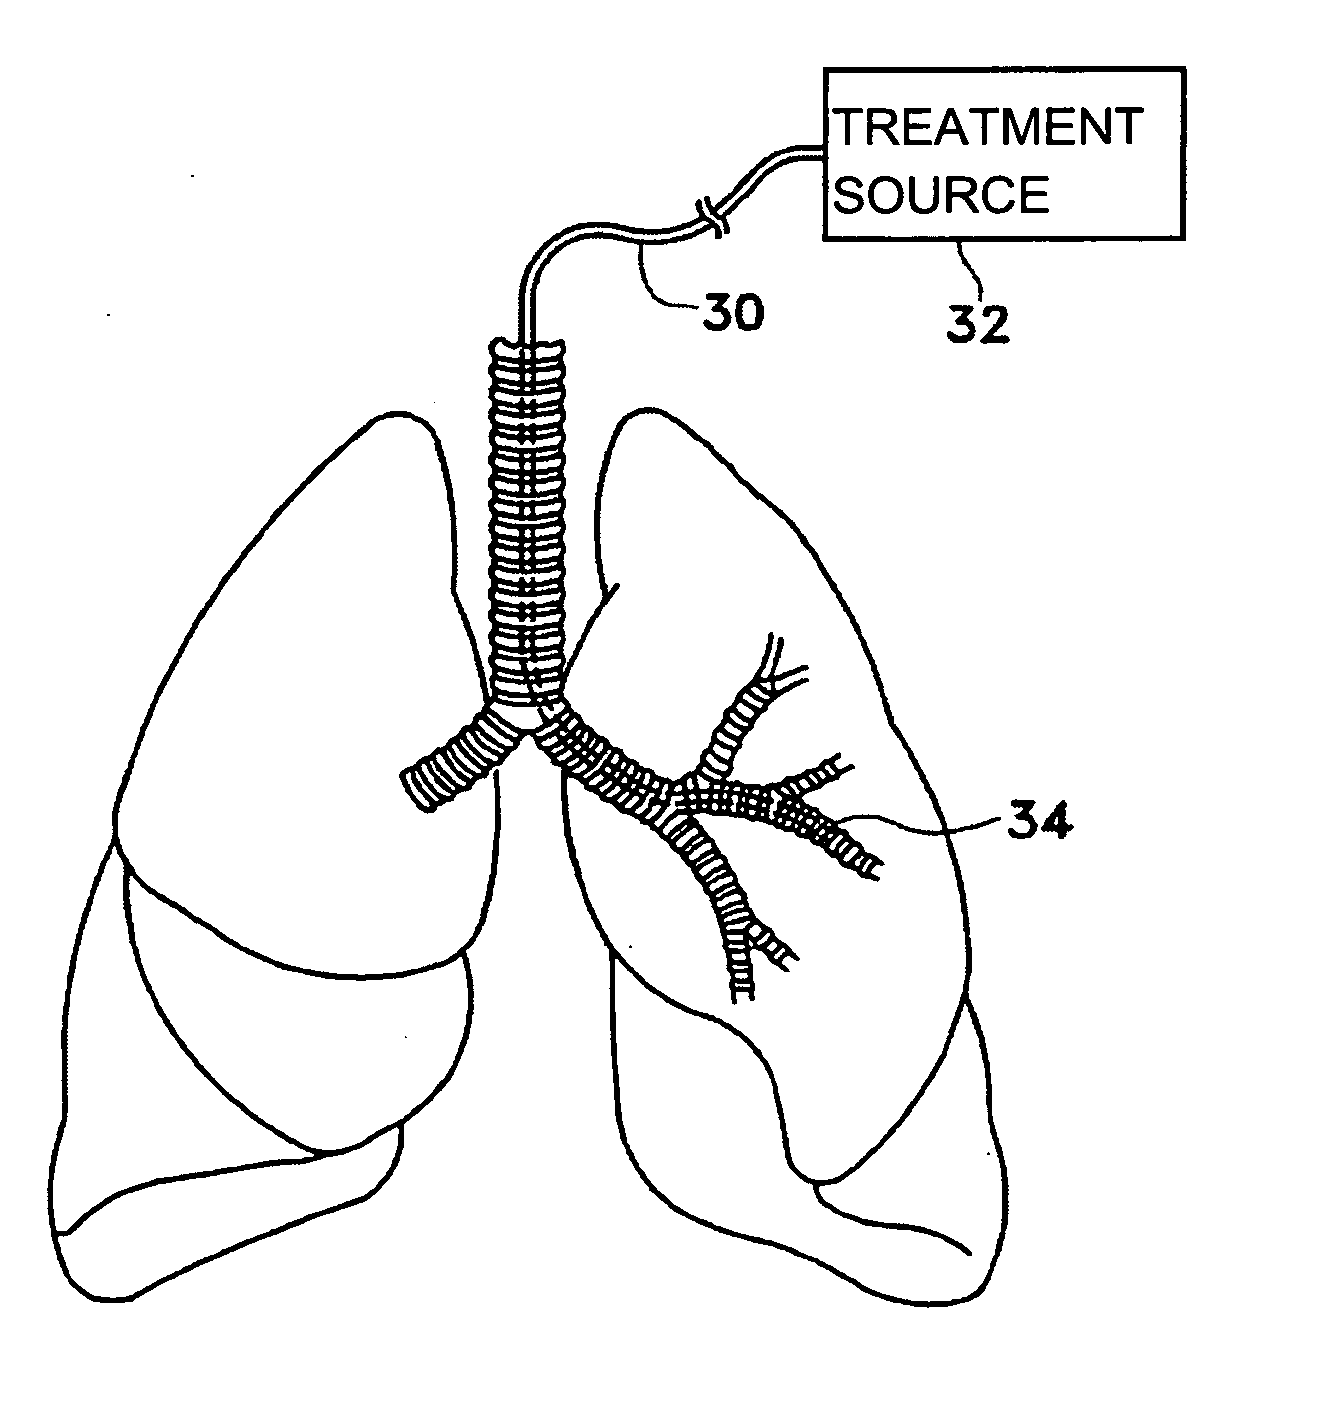 Methods for treating airways